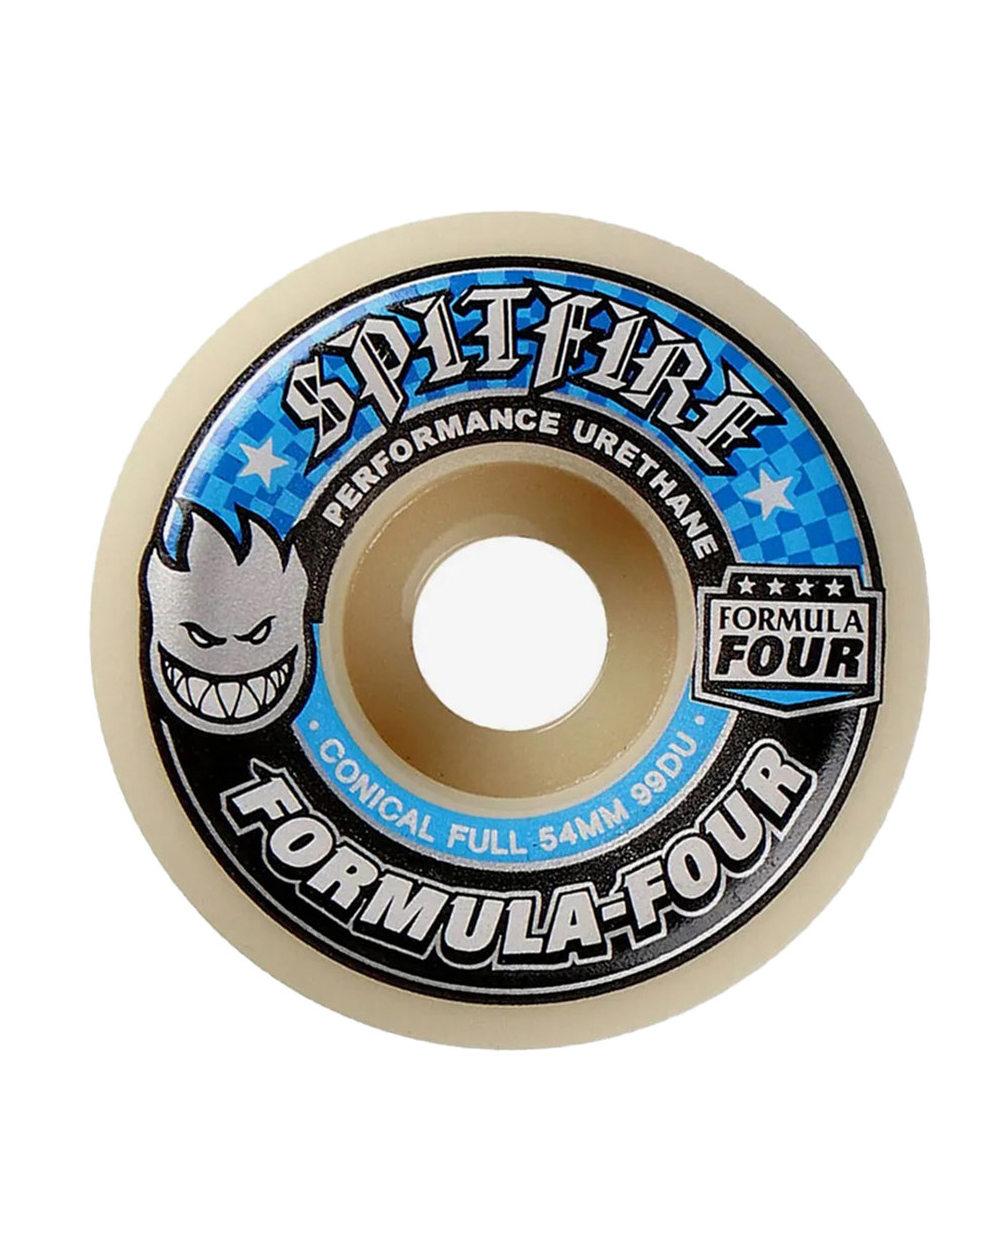 Spitfire Formula Four Conical Full 54mm 99A Skateboard Räder 4 er Pack